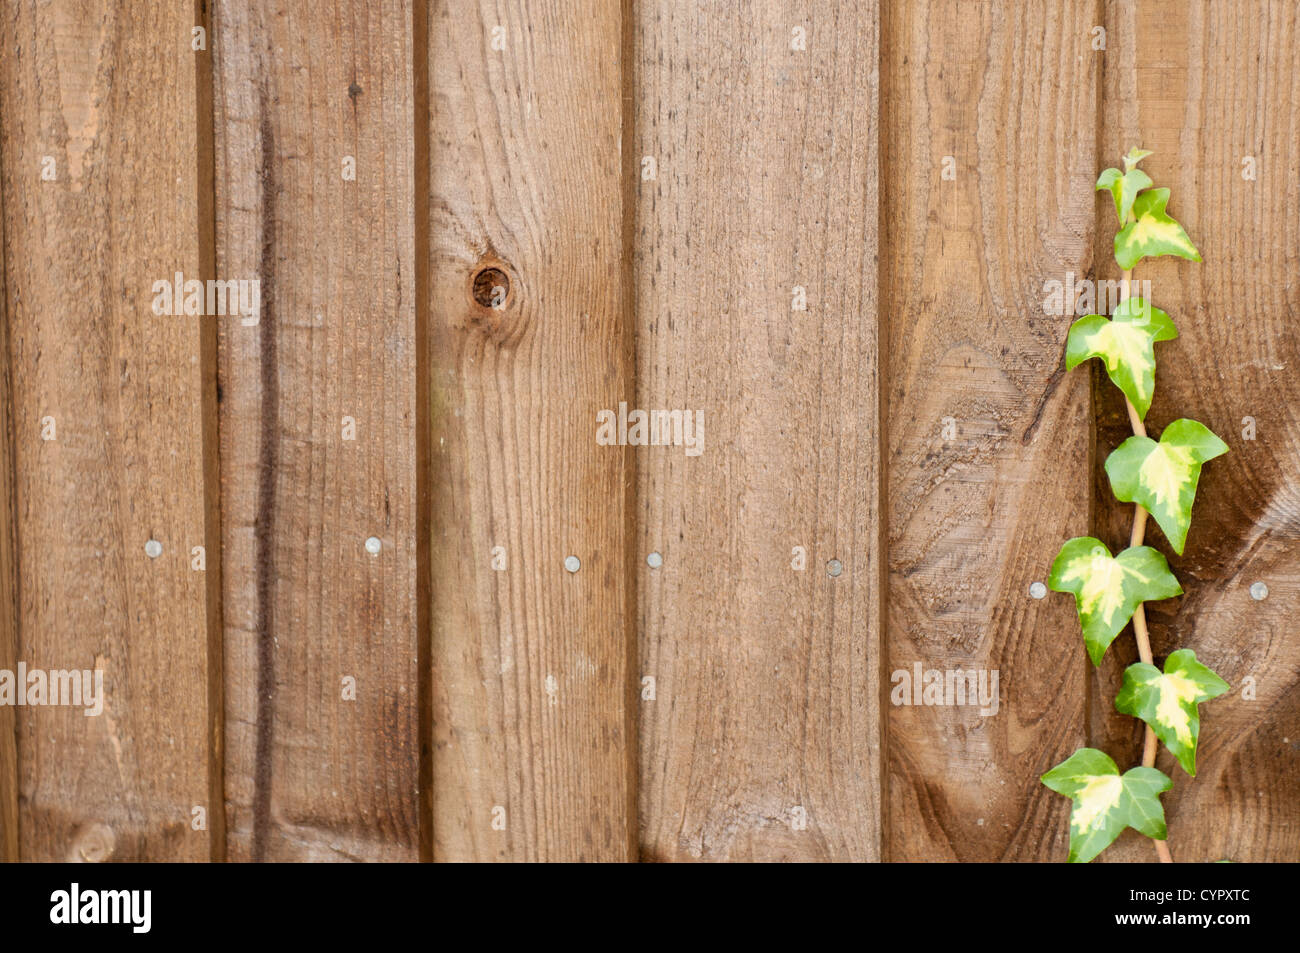 Lierre vert grimpant sur une clôture en bois Banque D'Images